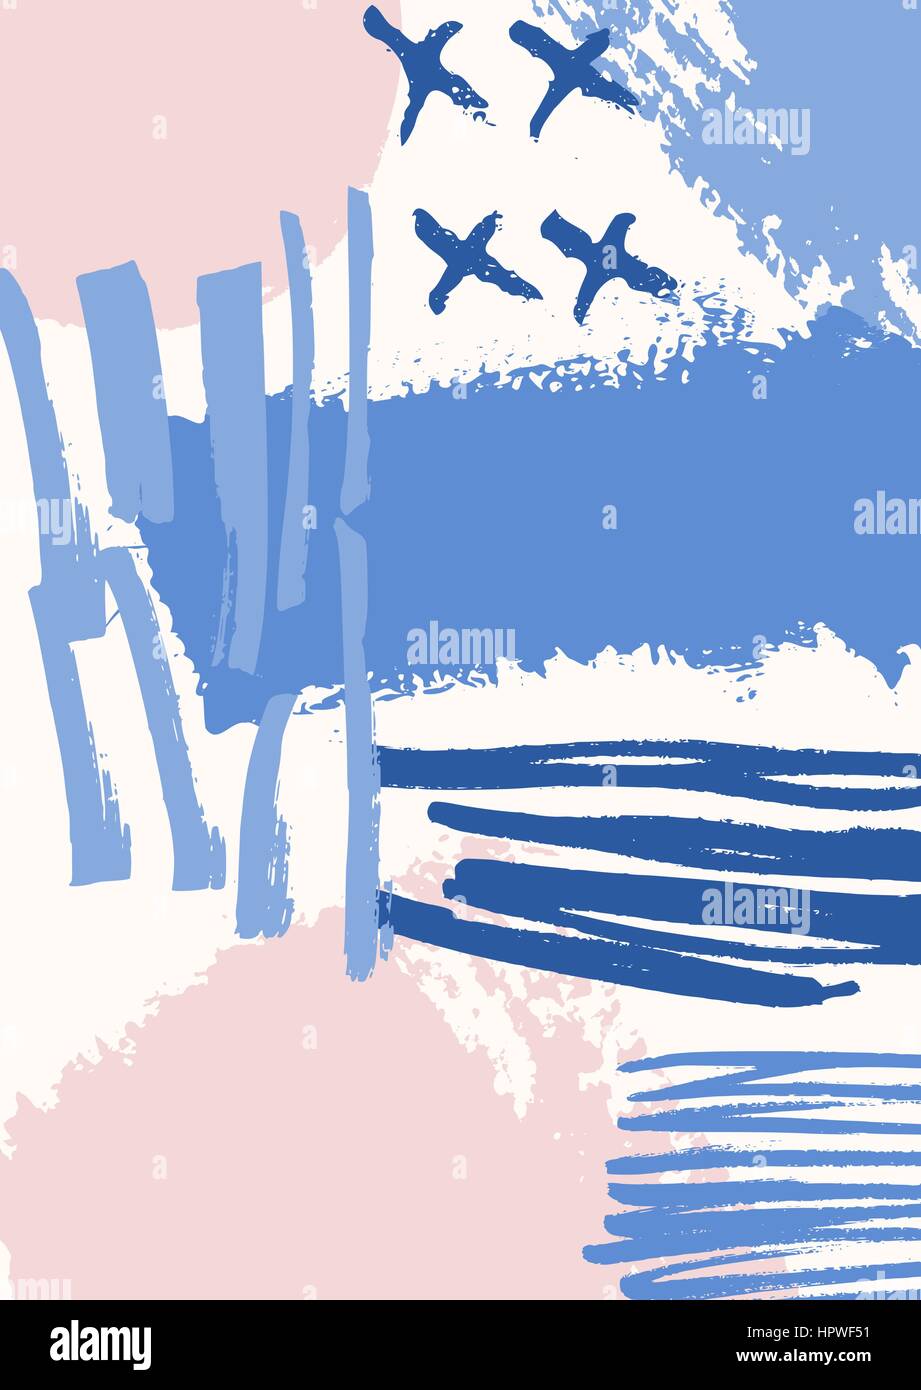 Disegnata a mano composizione astratta in blu, viola e rosa pastello. Tessile moderno, biglietto di auguri, poster, la carta di avvolgimento disegni. Illustrazione Vettoriale